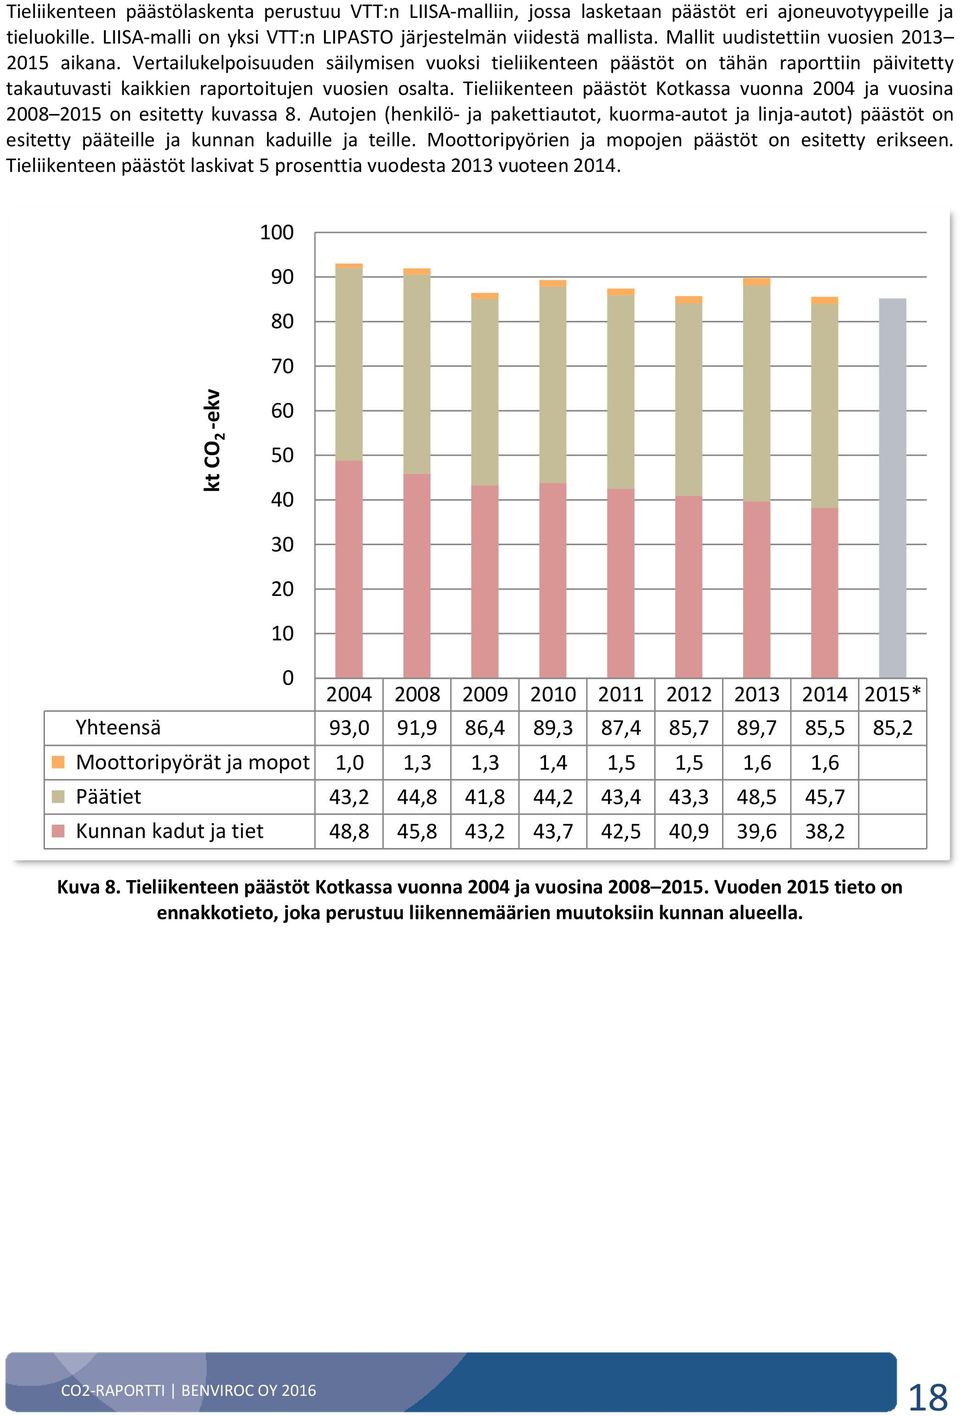 Tieliikenteen päästöt Kotkassa vuonna 2004 ja vuosina 2008 2015 on esitetty kuvassa 8.